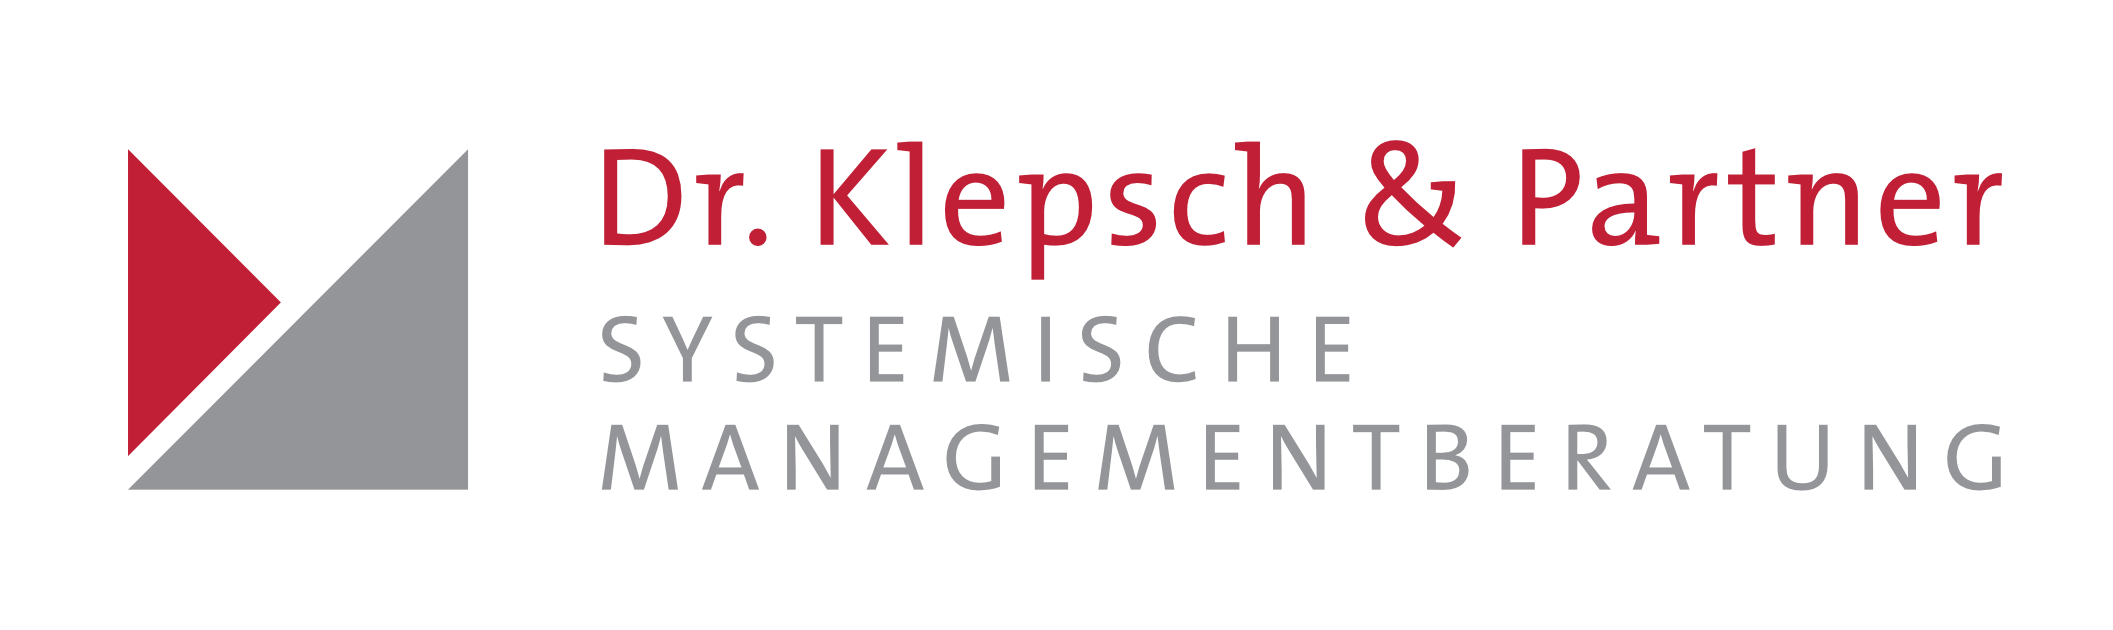 Dr. Klepsch & Partner